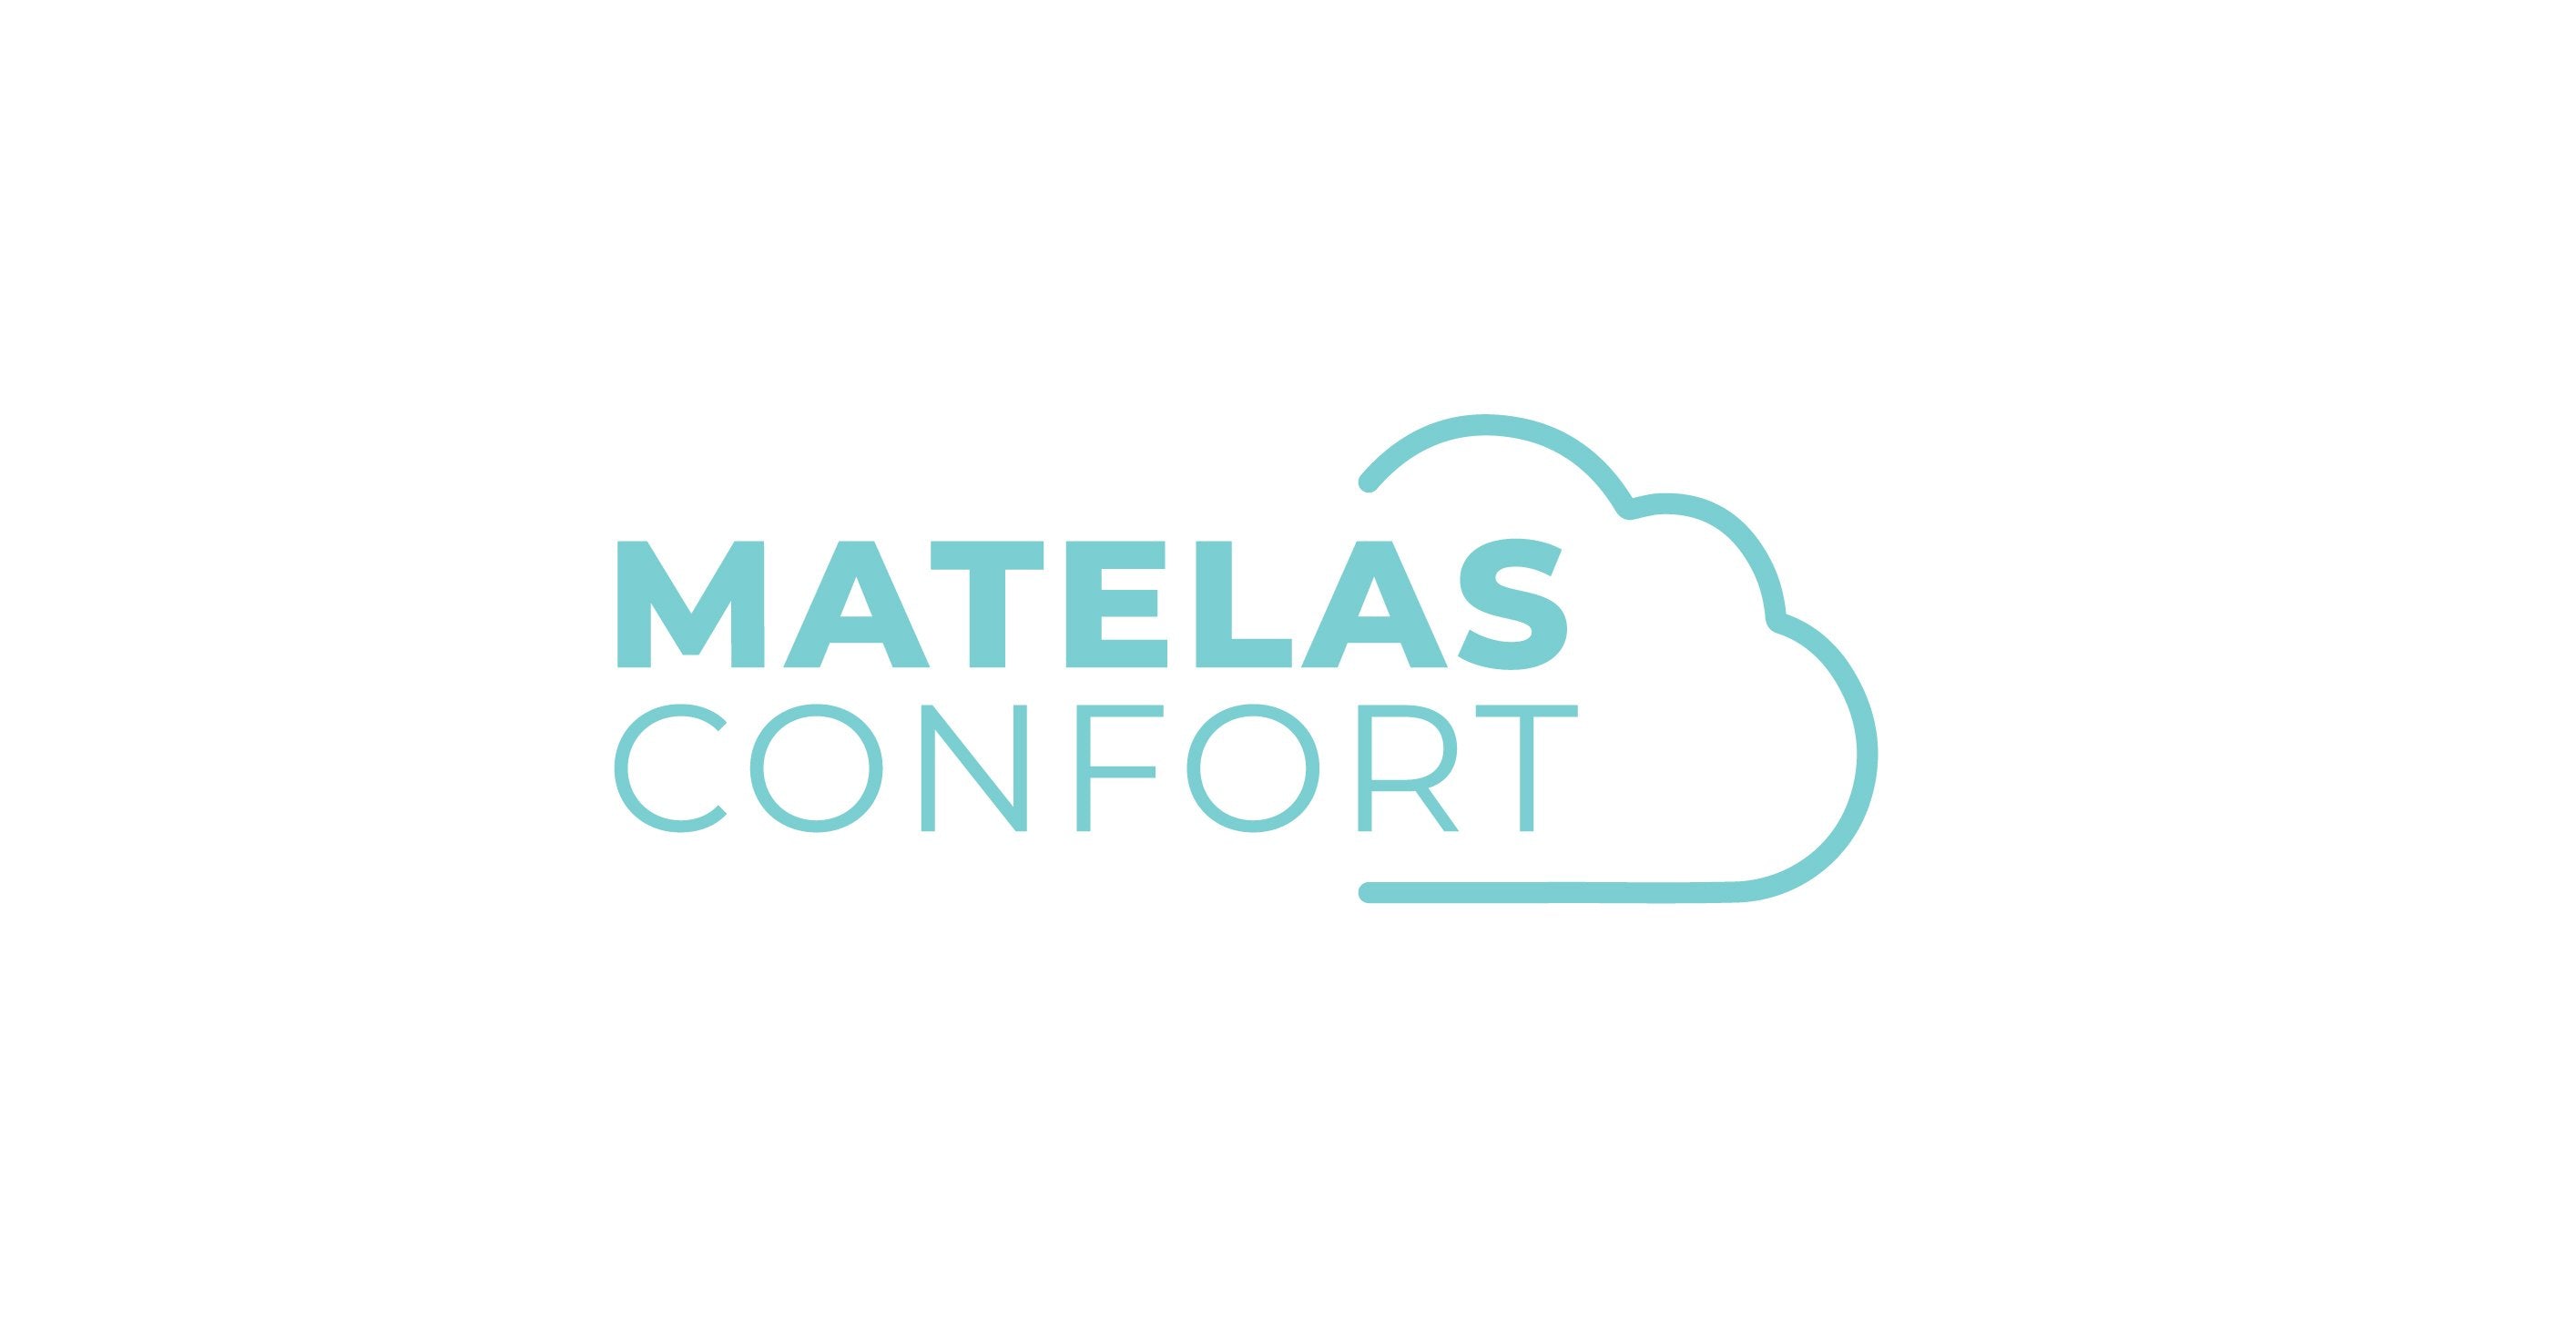 (c) Matelasconfort.com